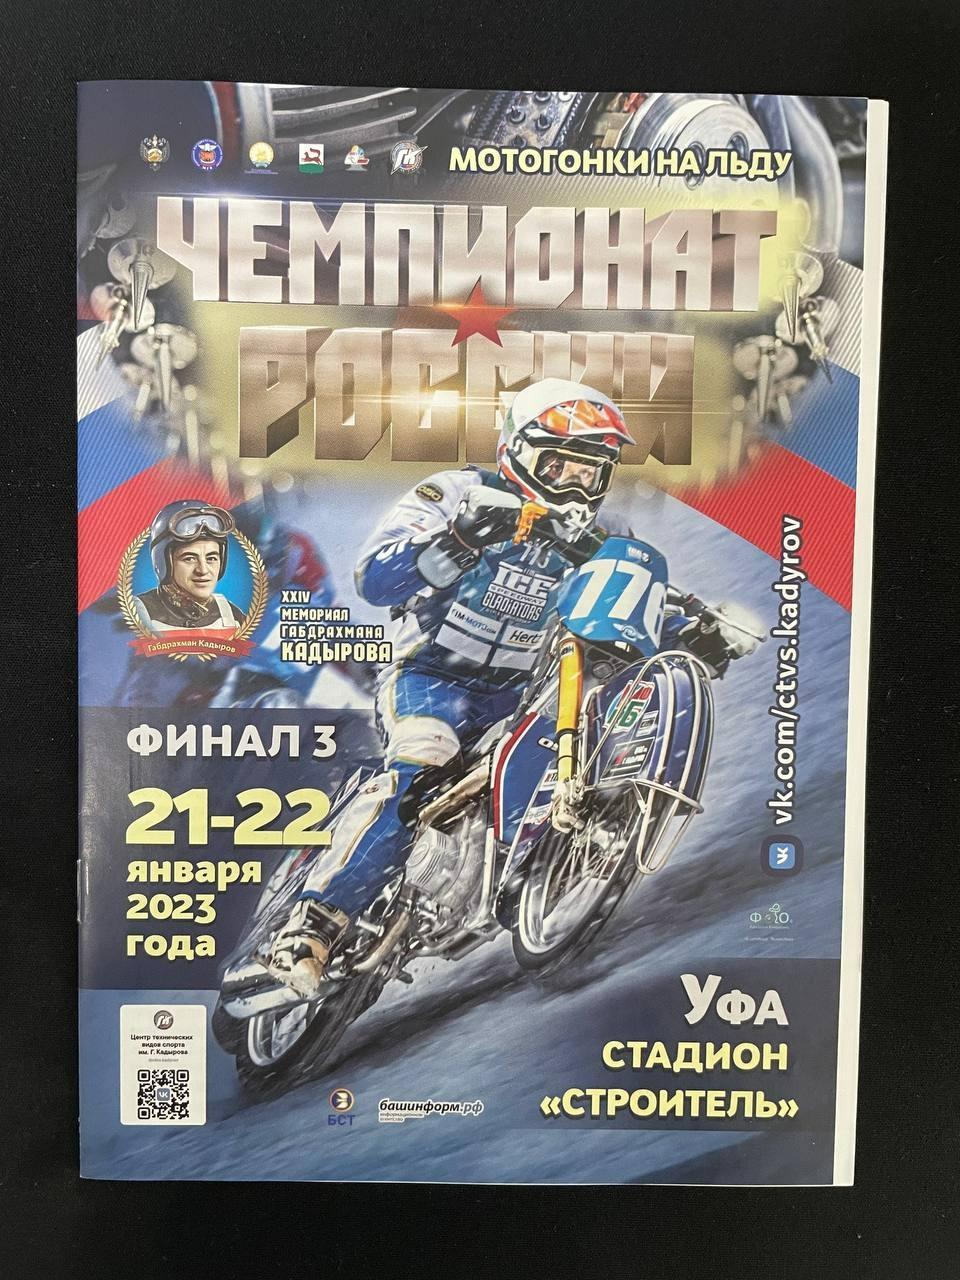 Мотогонки на льду. Чемпионат России. Финал-3 2023 года.